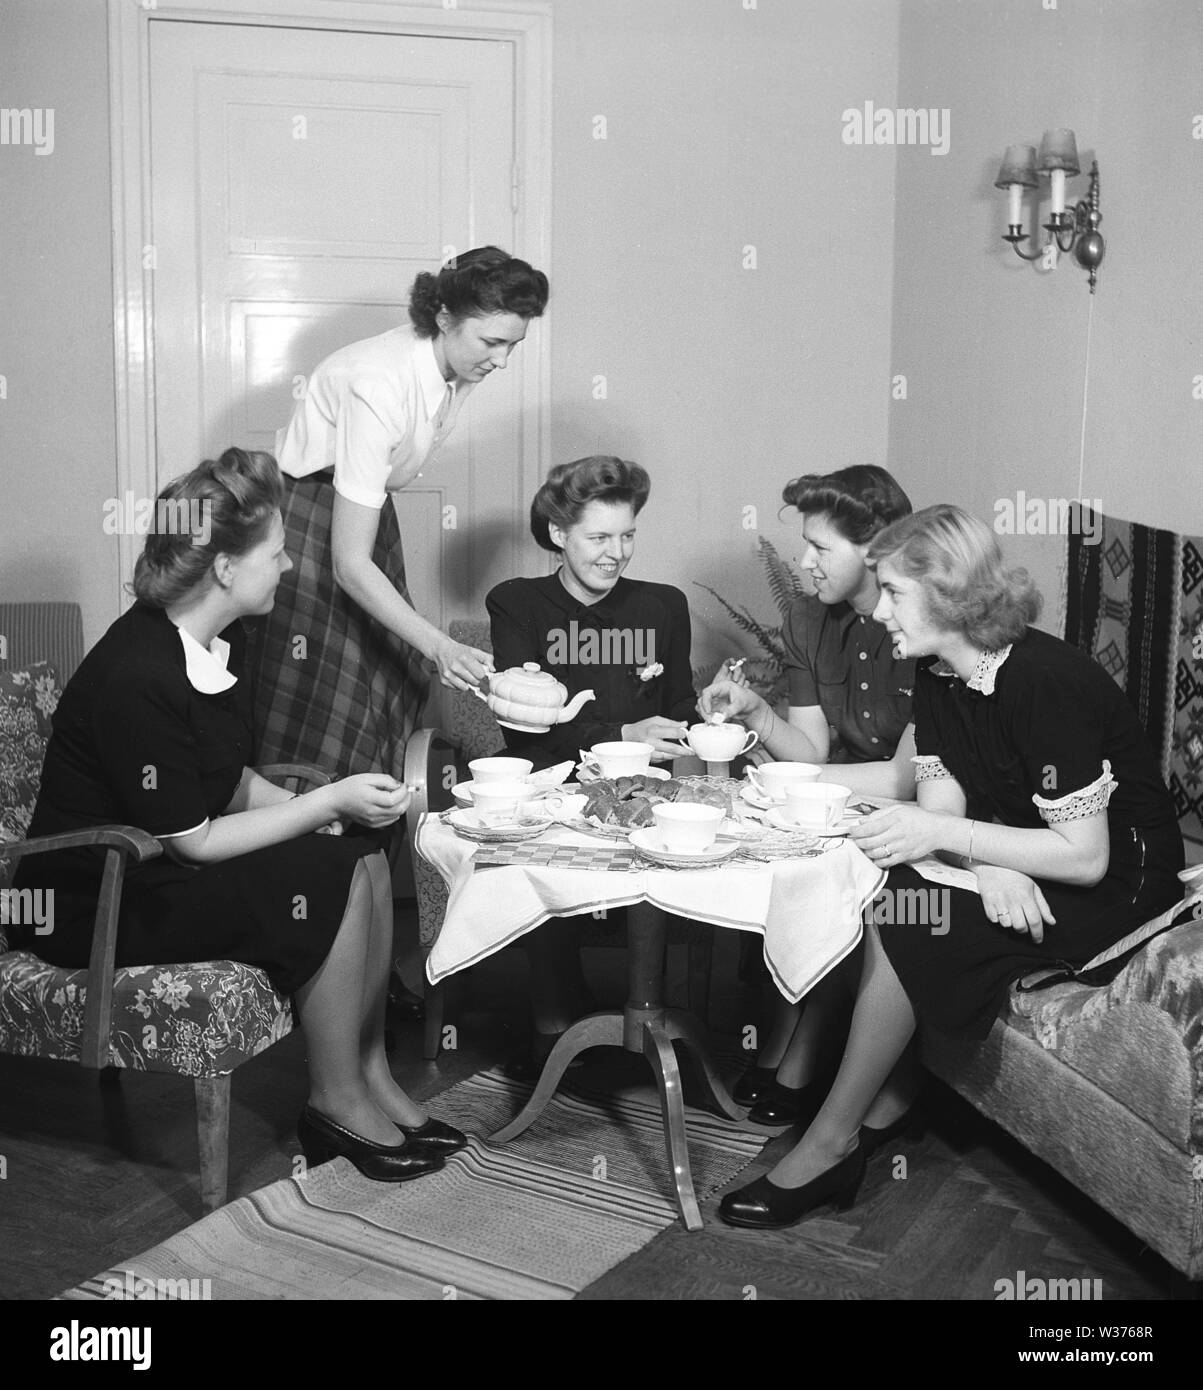 Tempo del tè negli anni '1940s. Un gruppo di giovani donne si sta godendo la fika insieme intorno ad un tavolo con tazzine da tè e torte. La padrona di casa versa il tè da un bel bollitore di porcellana. Negli anni '1940s, quando solo le donne si sono incontrate e bevuto tè o caffè, è stato un evento sociale. Potrebbero sedersi e chiacchierare, scambiare pettegolezzi e notizie senza coinvolgere i loro uomini o i loro bambini. Svezia 1945 Kristoffersson Rif. M74-2 Foto Stock